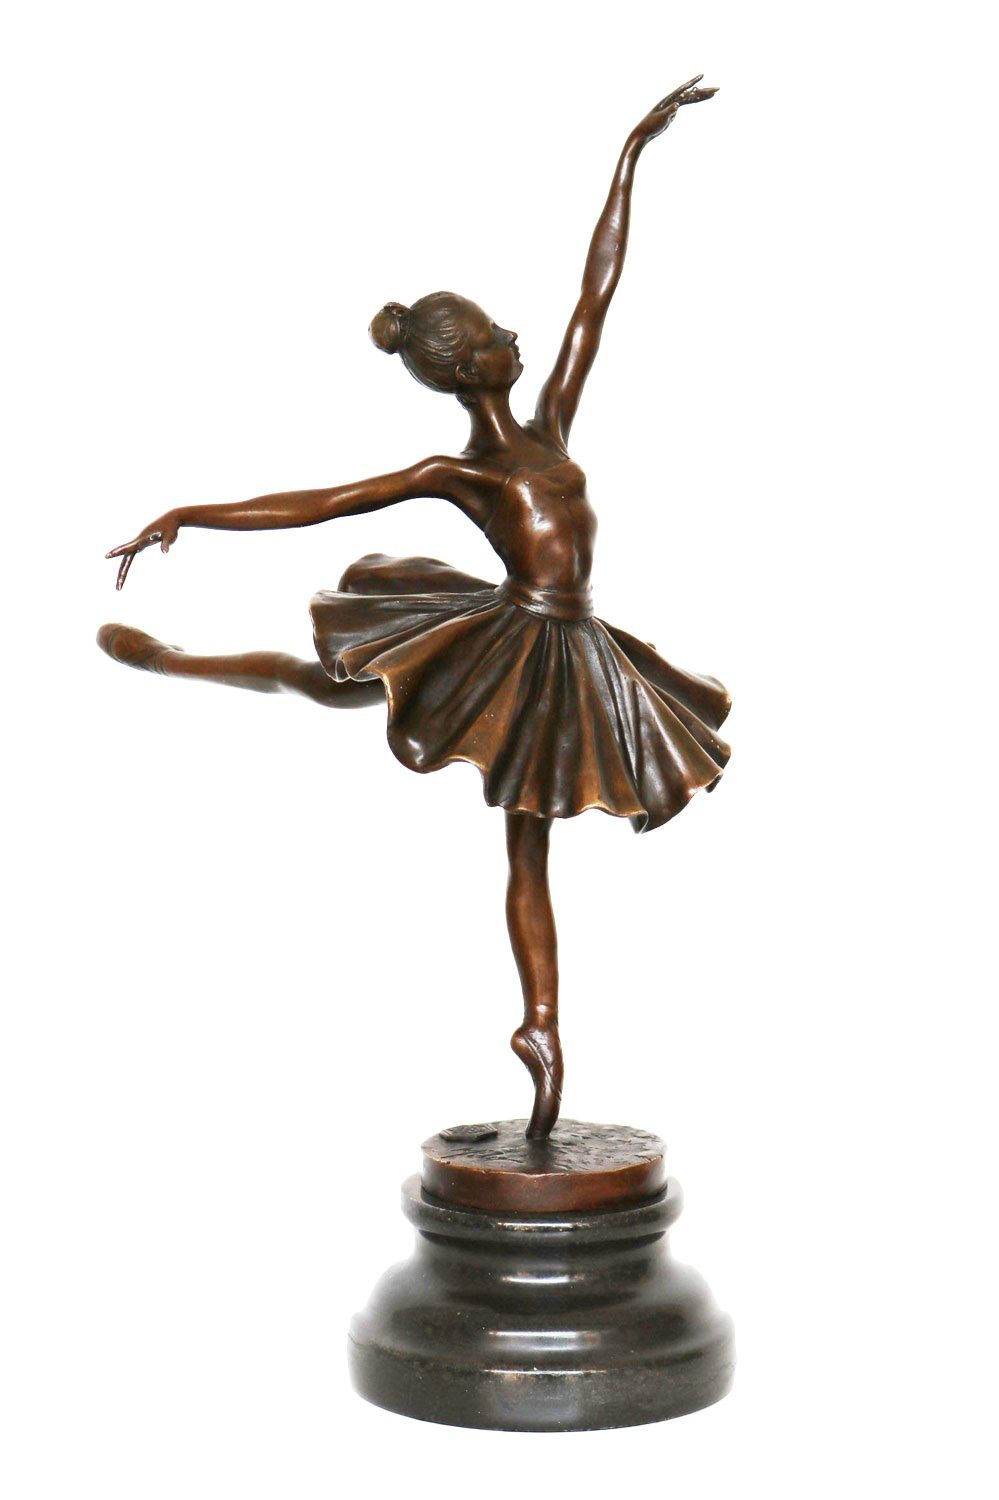 Aubaho Skulptur Bronzeskulptur Tänzerin Ballerina Repl Degas Bronze nach Ballett Figur